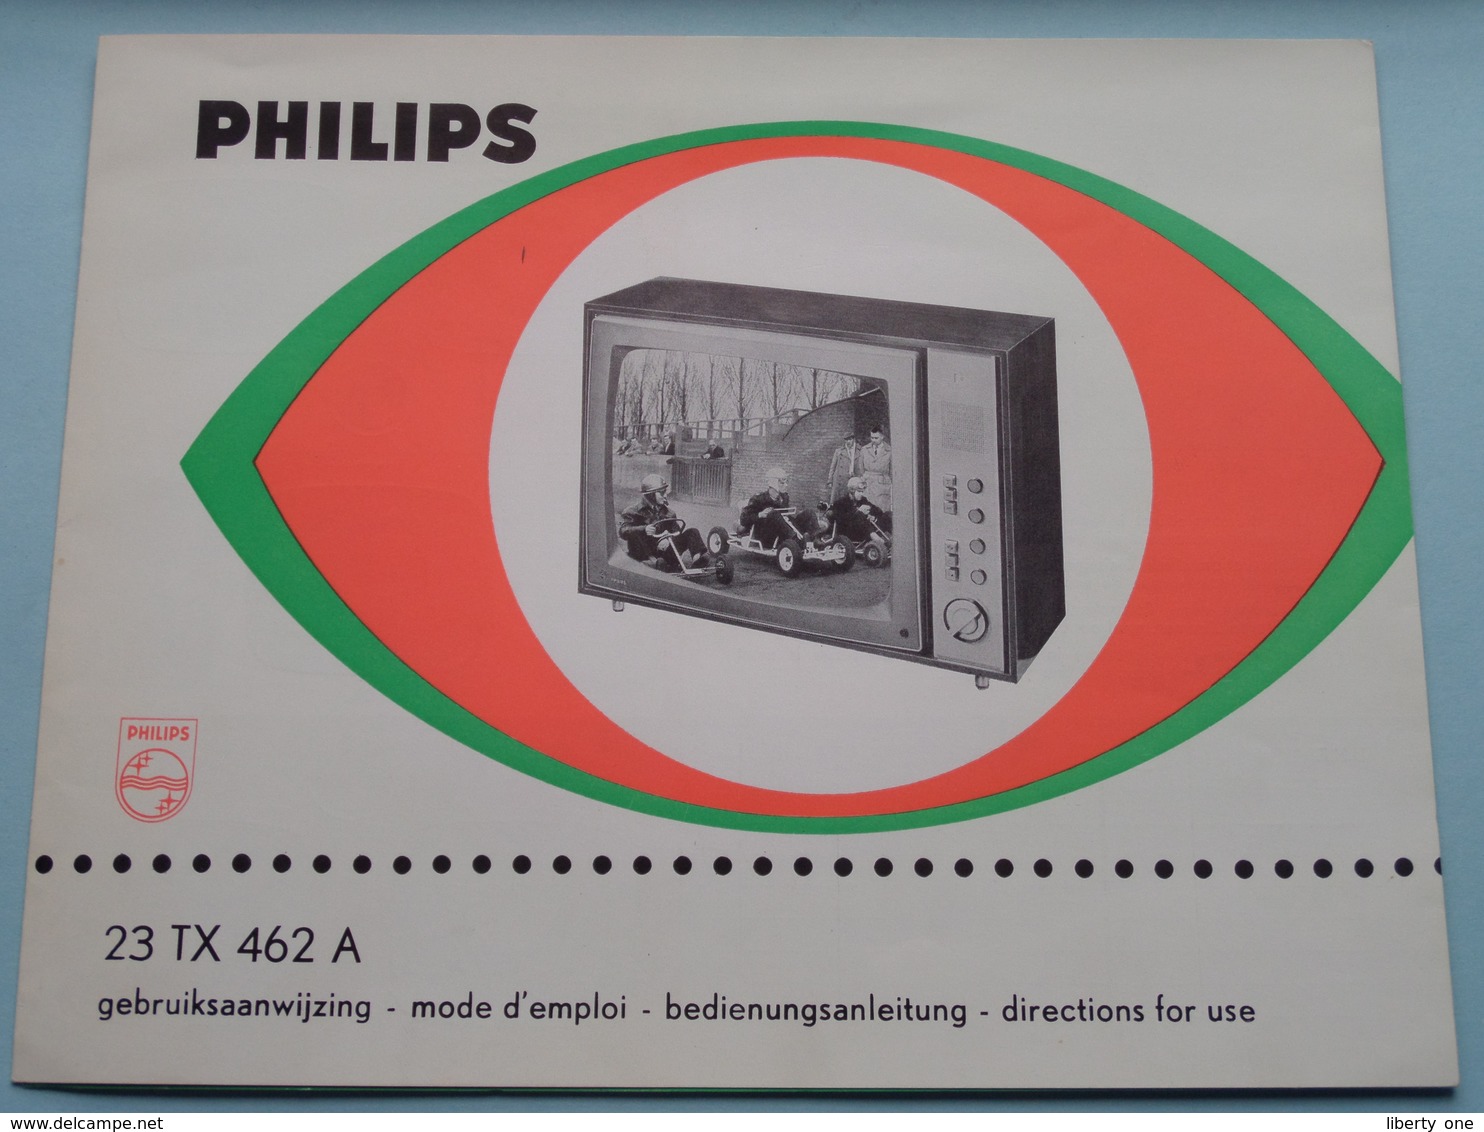 philips gebruiksaanwijzing tv